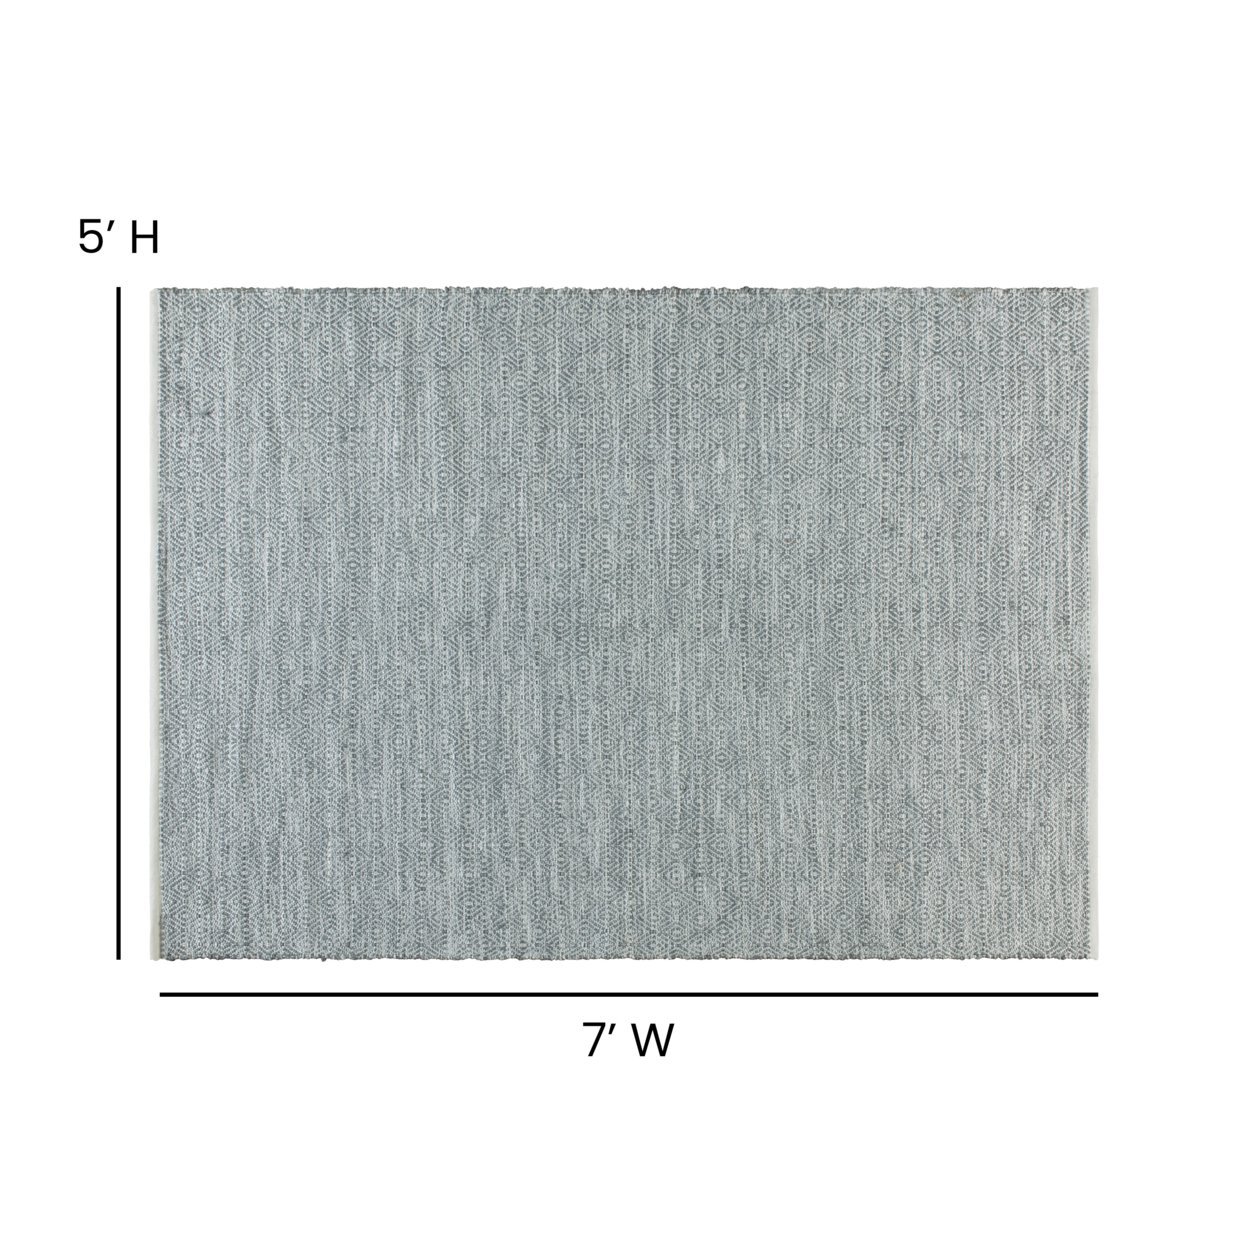 5' X 7' Handwoven Indoor Or Outdoor Diamond Pattern Area Rug In Grey